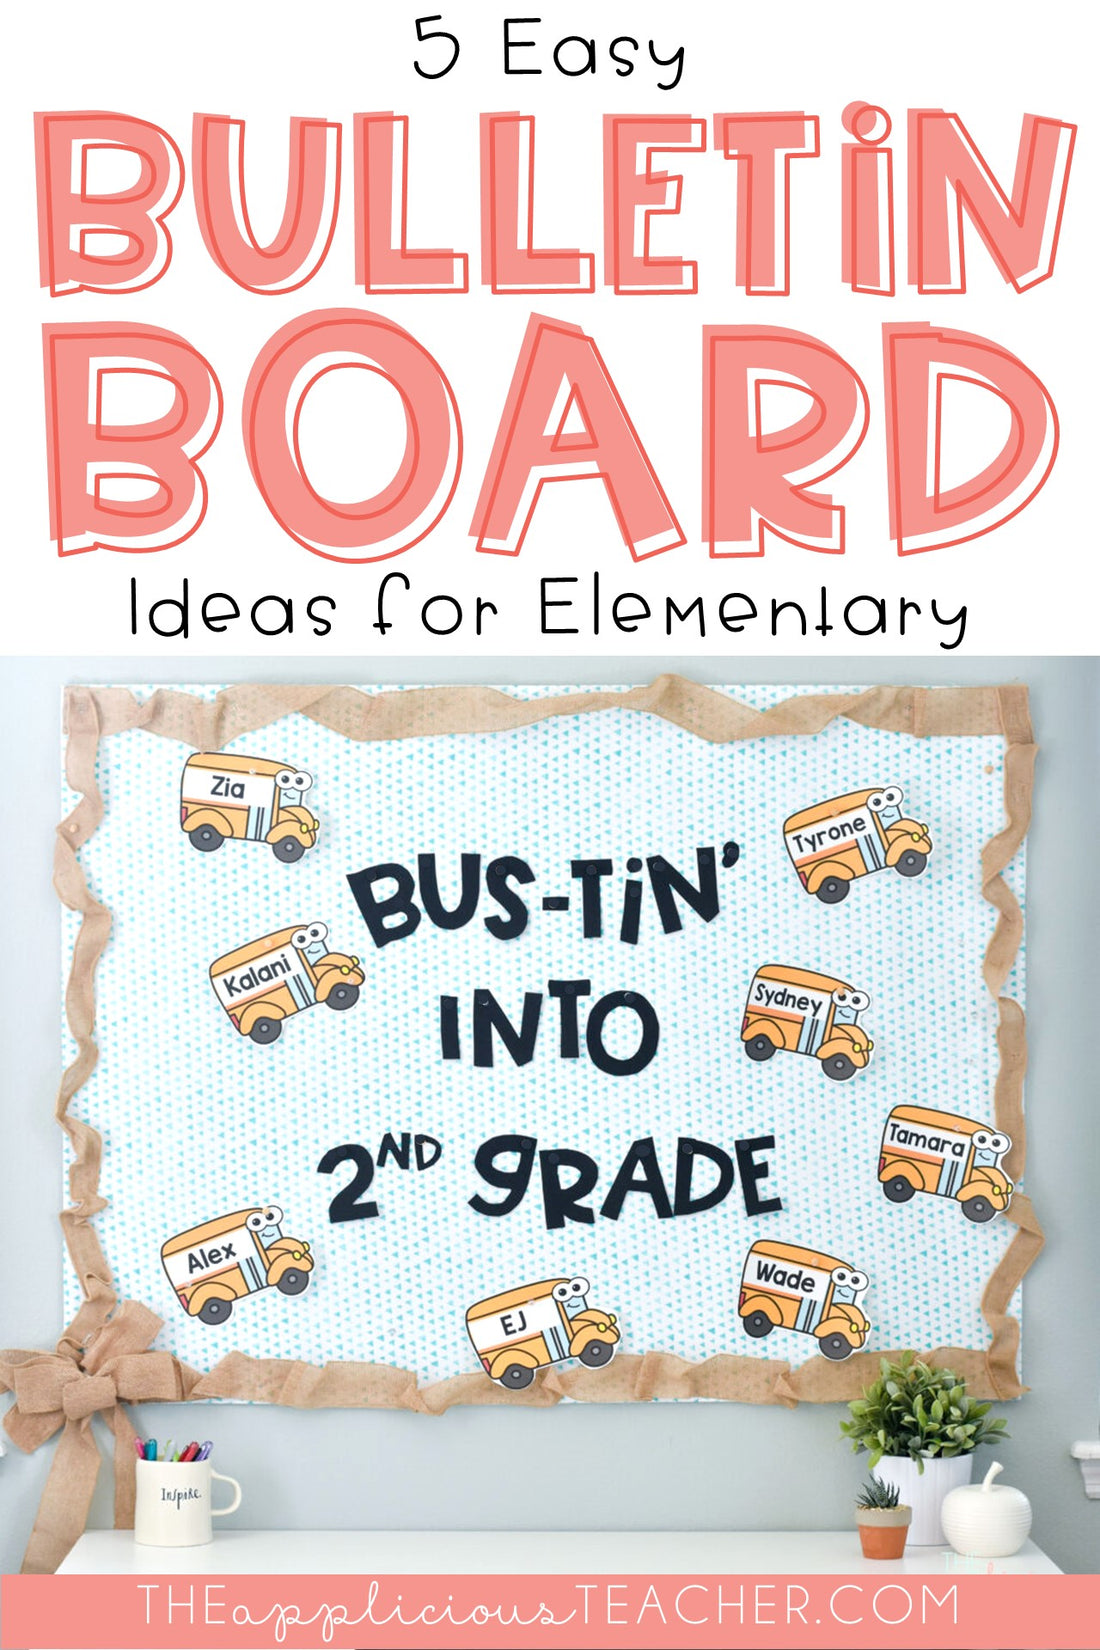 5 Favorite Bulletin Board Ideas for Elementary!